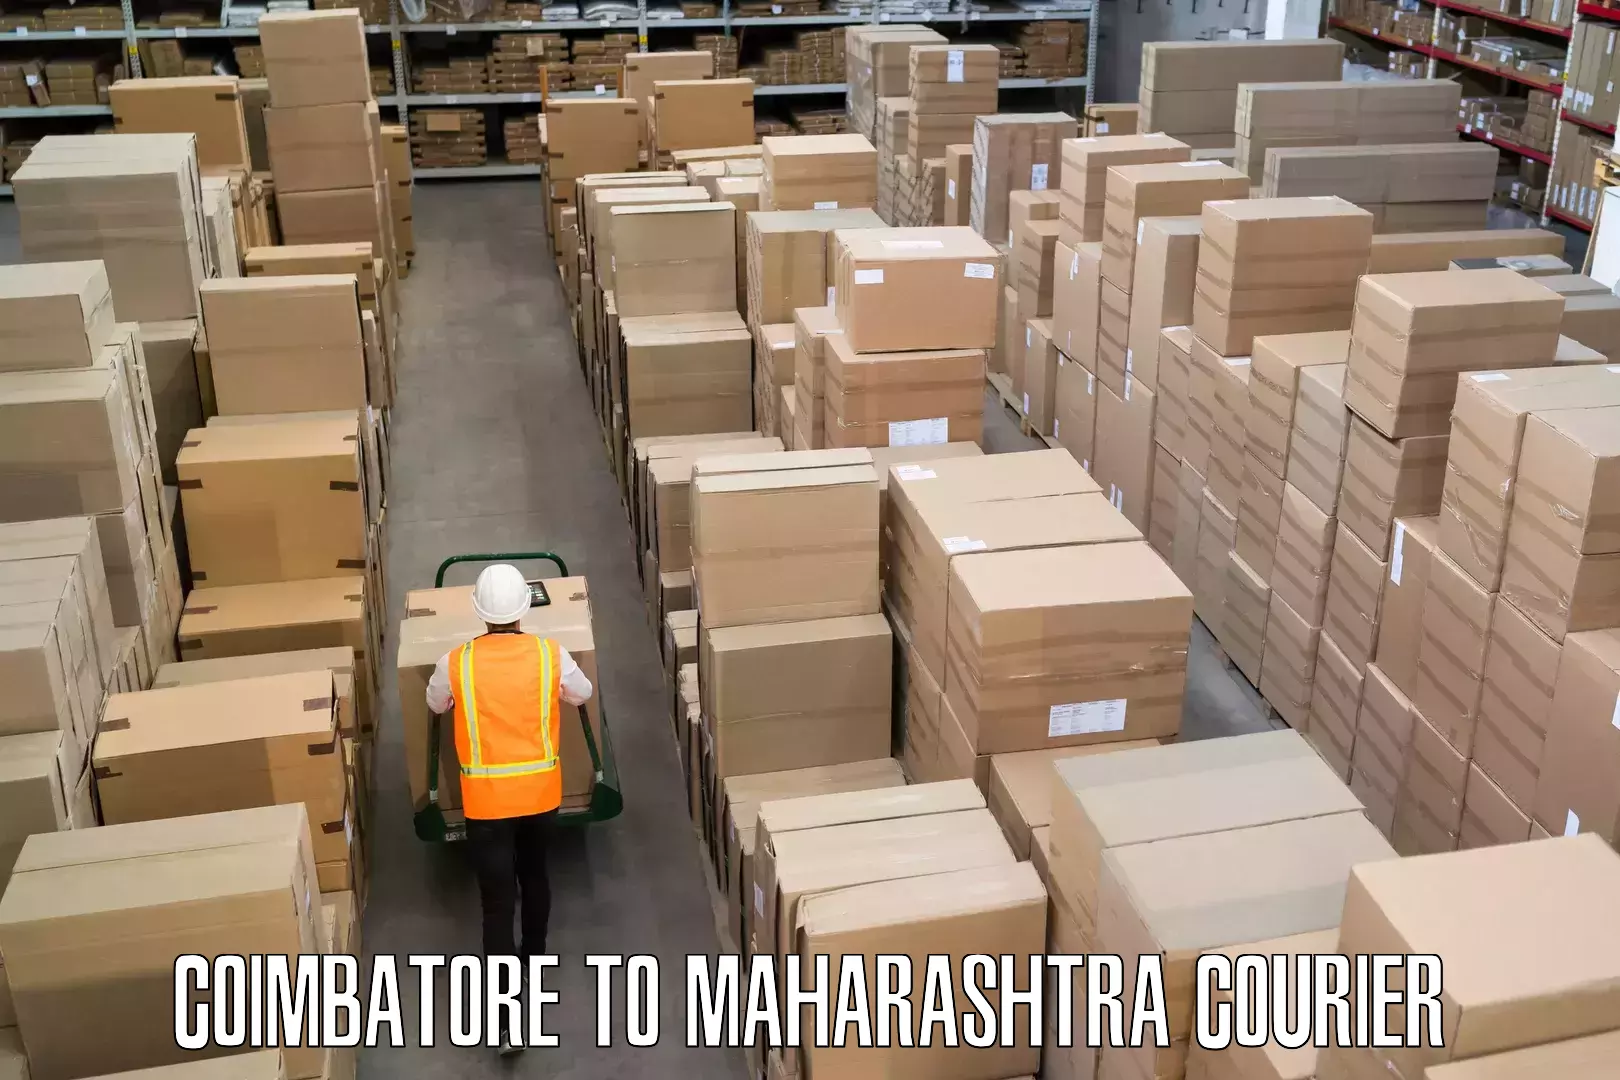 Luggage transport company Coimbatore to Maharashtra